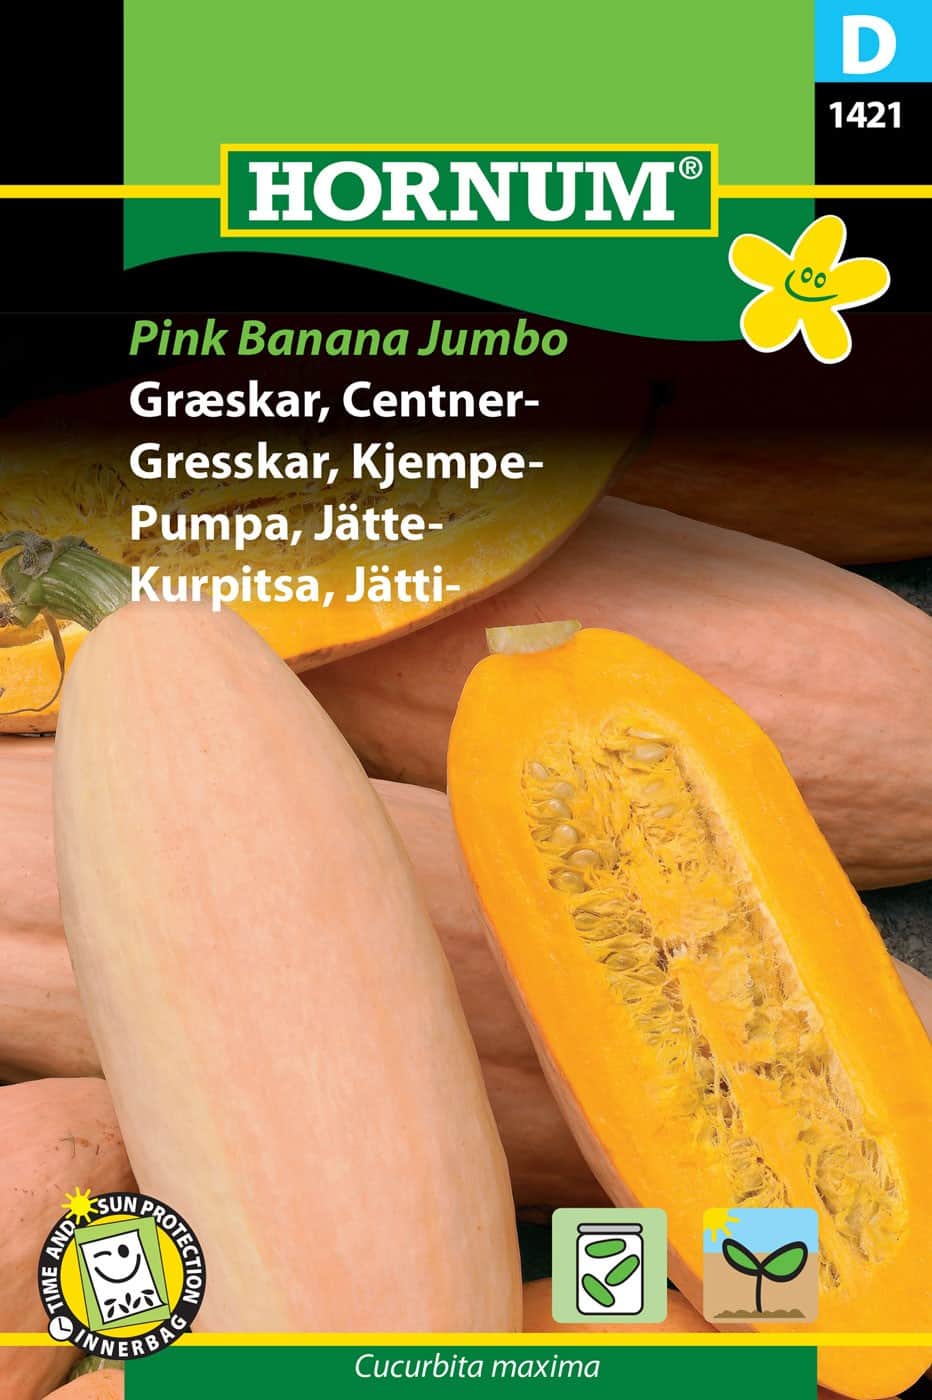 jttepumpa-pink-banana-jumbo-fr-1